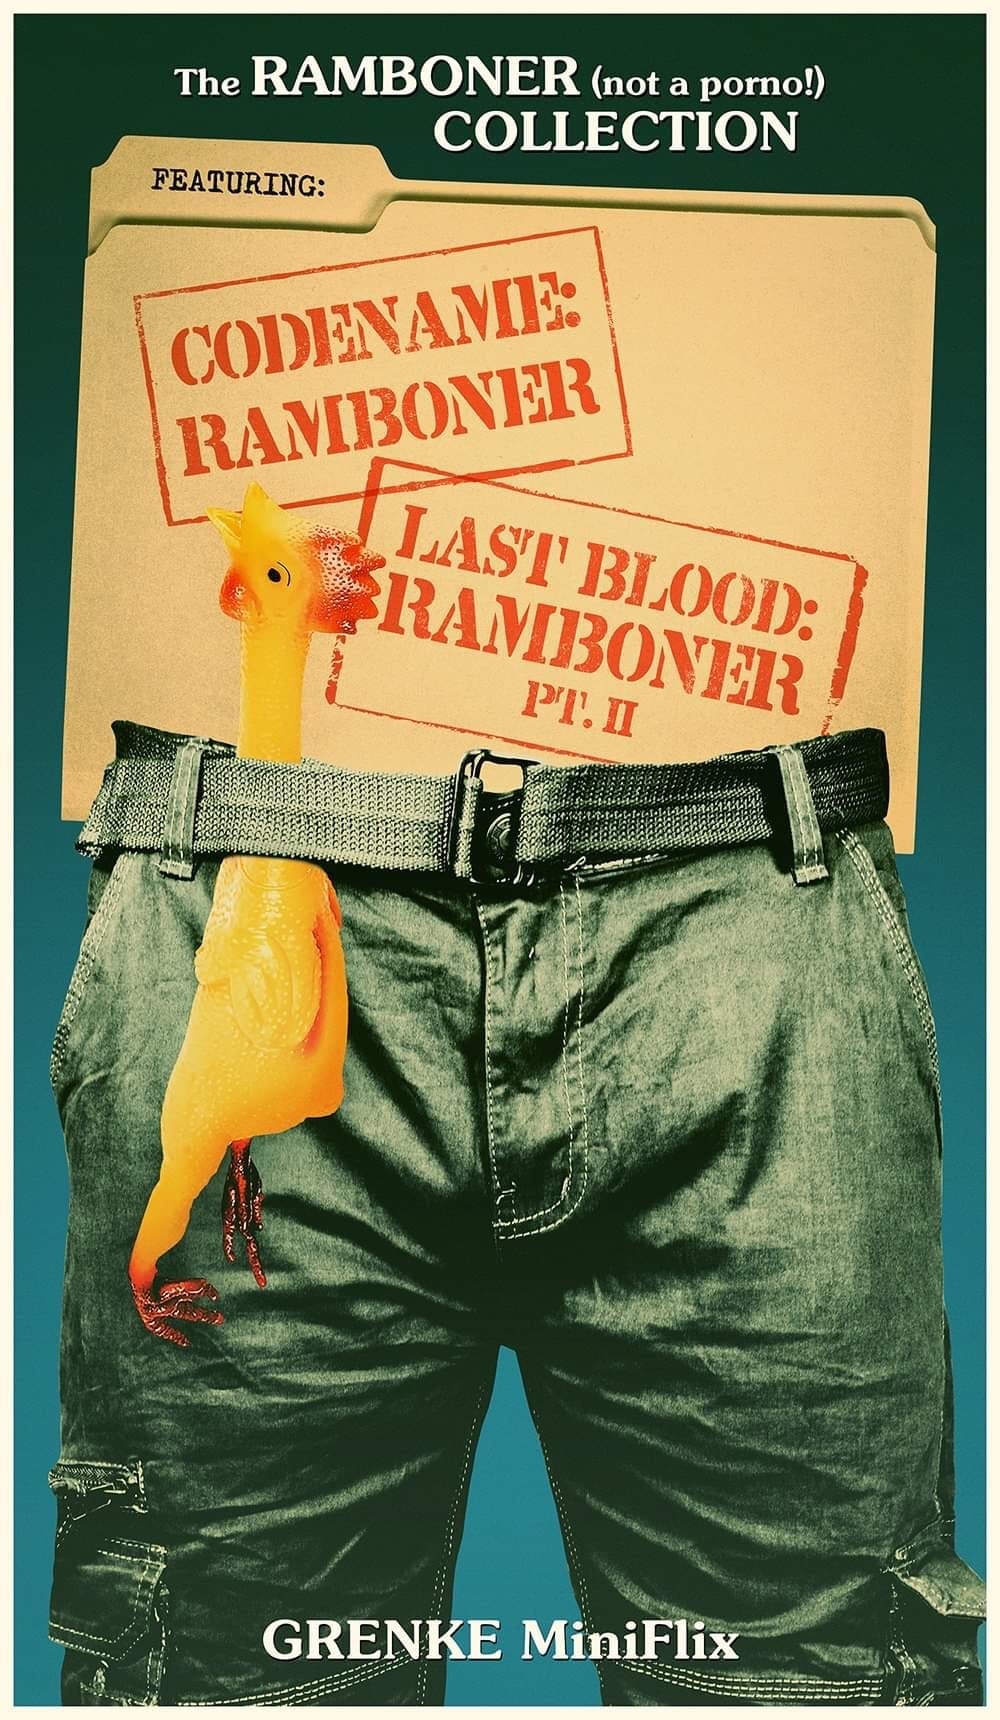 Last Blood: Ramboner PT. II